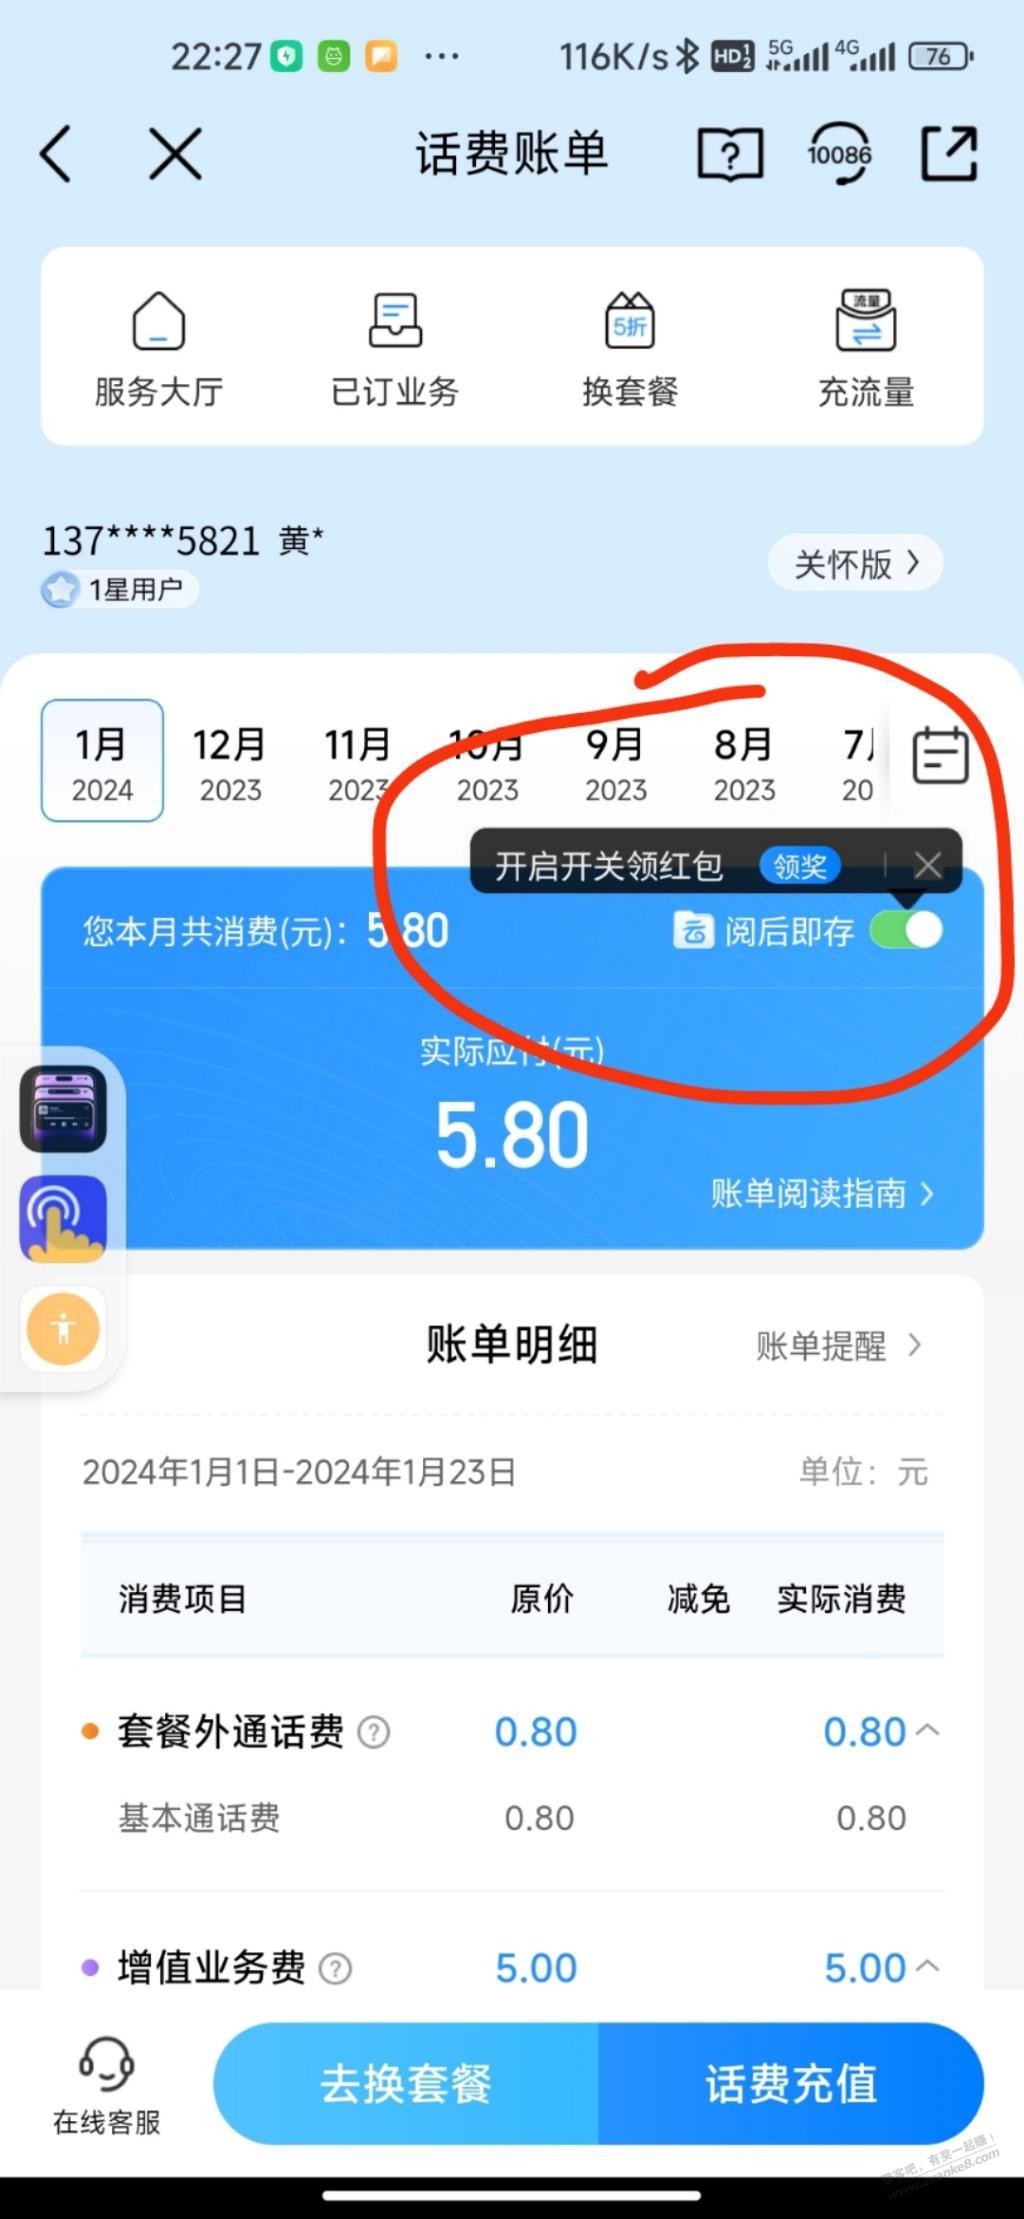 中国移动客户端和云盘客户端的羊毛-惠小助(52huixz.com)